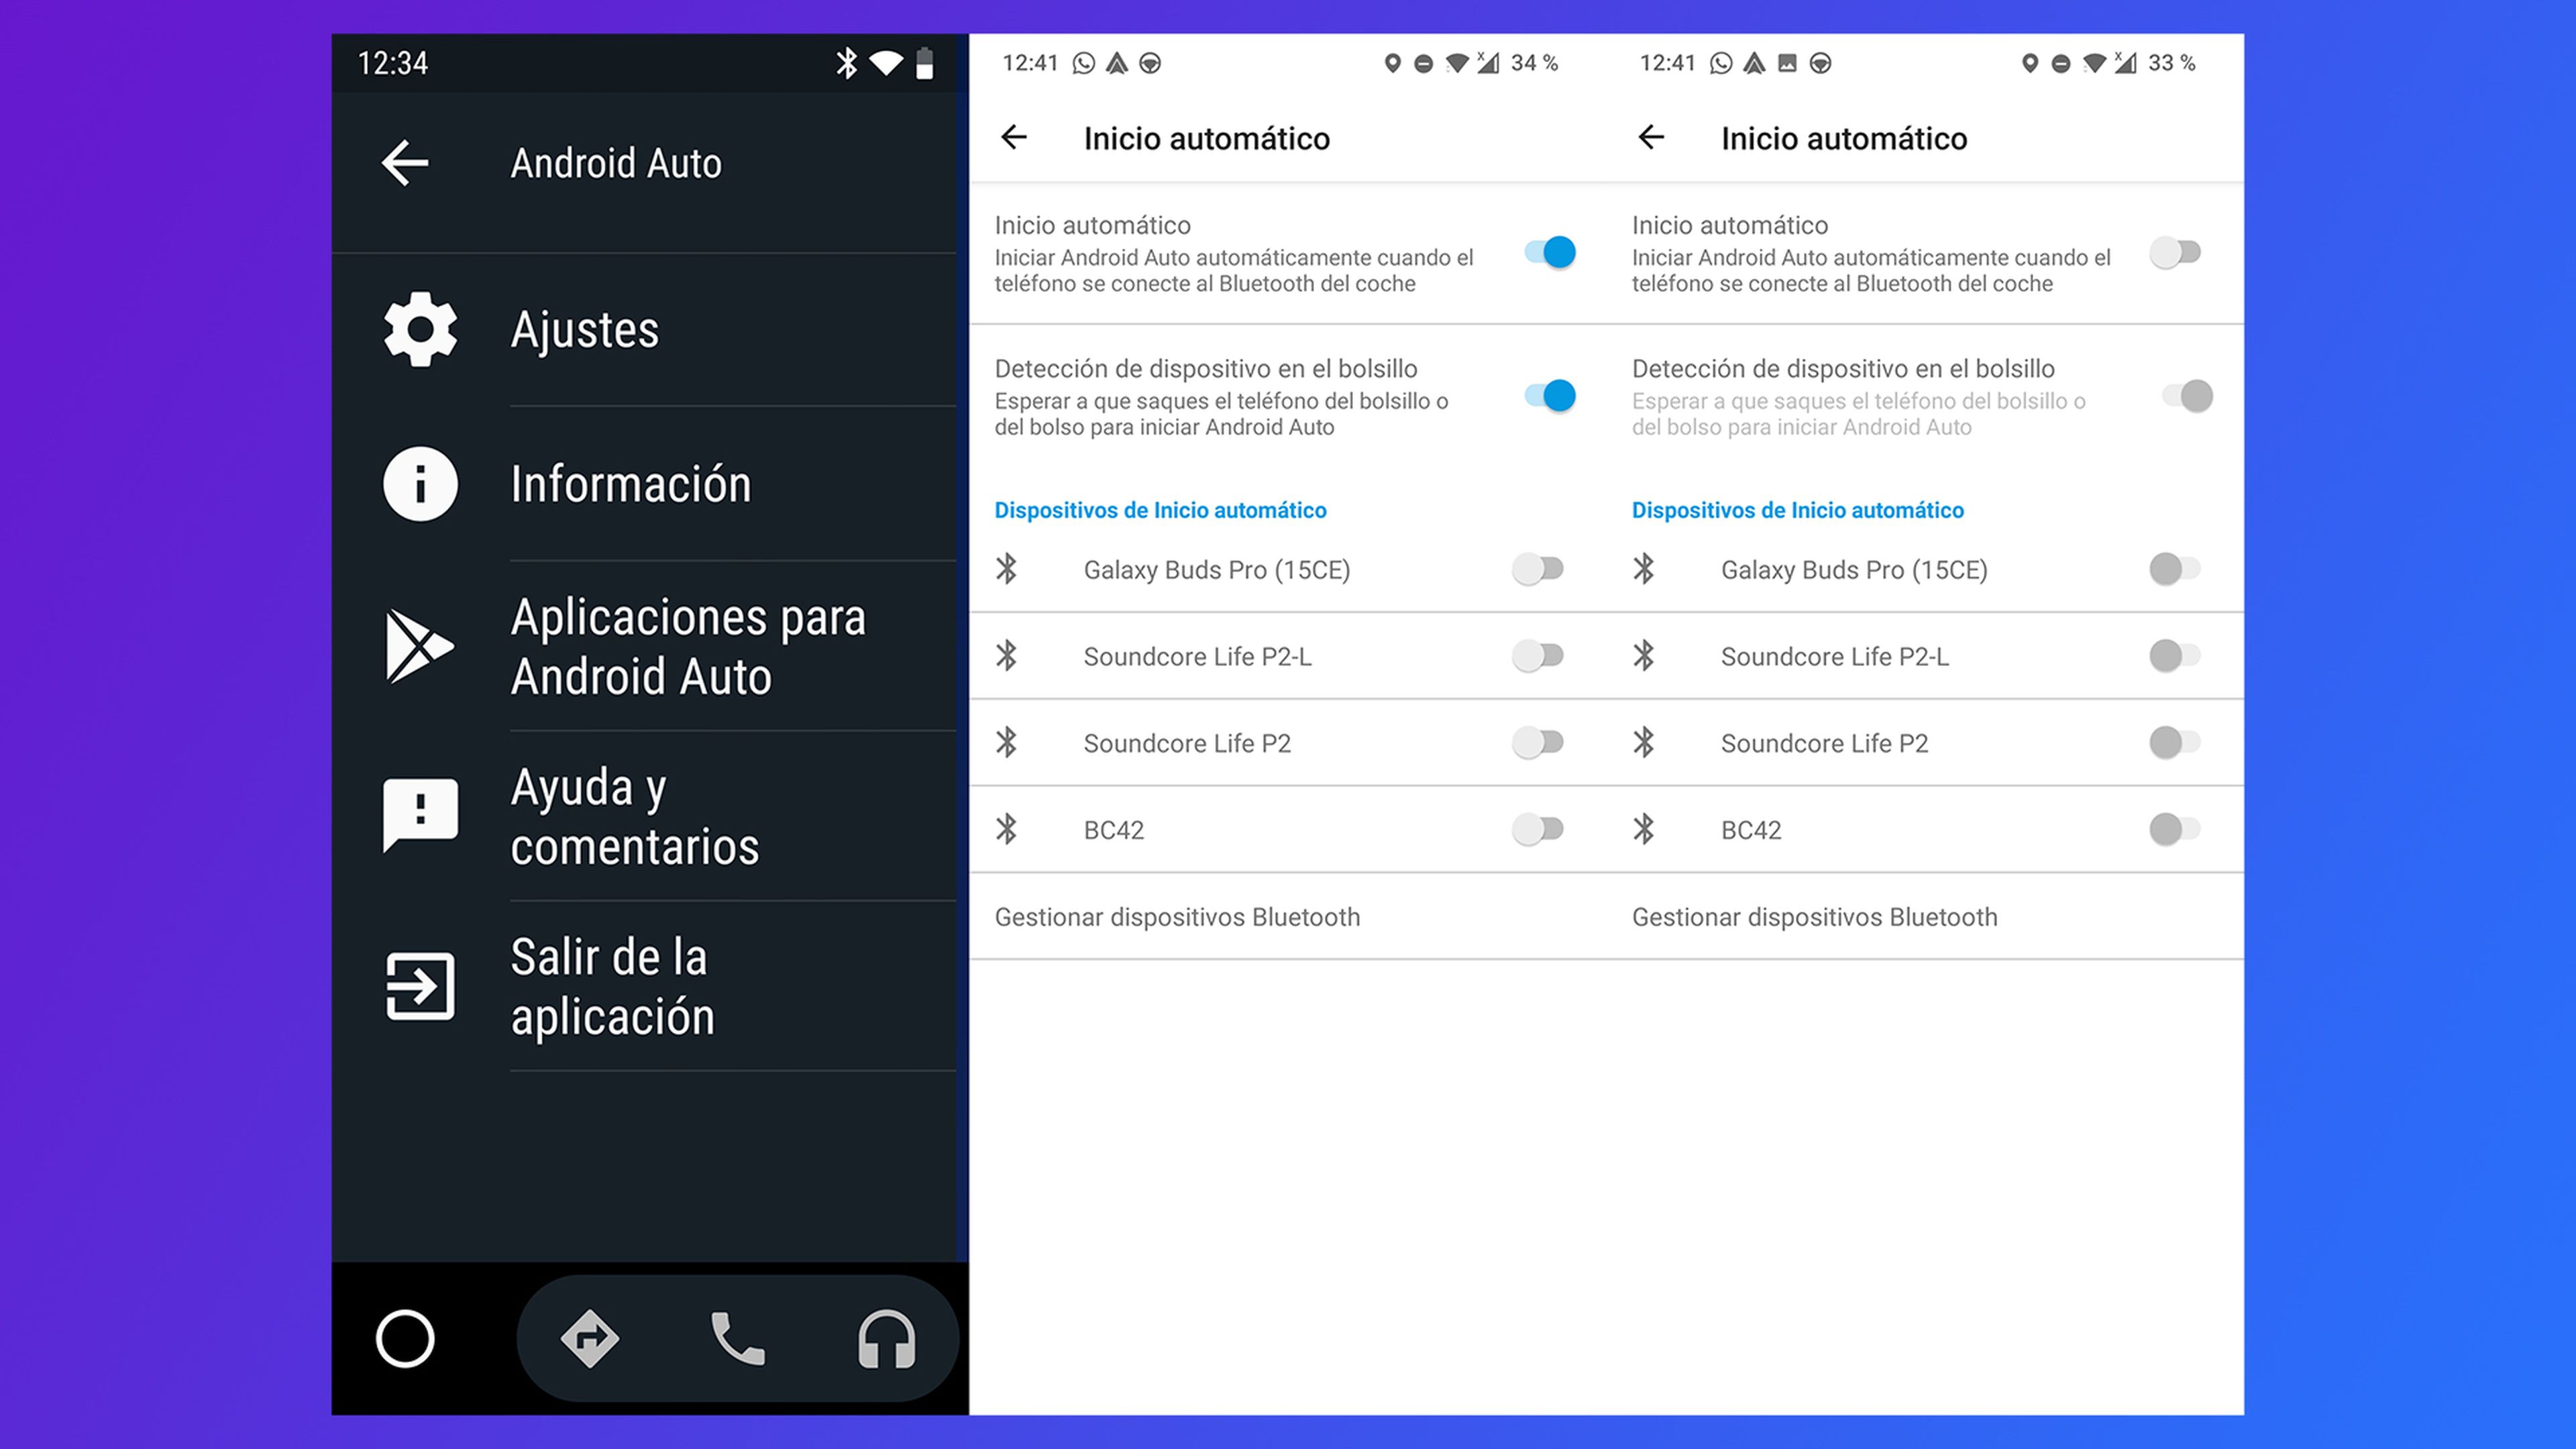 Configuraciones importantes de Android Auto que debes cambiar antes de salir de viaje